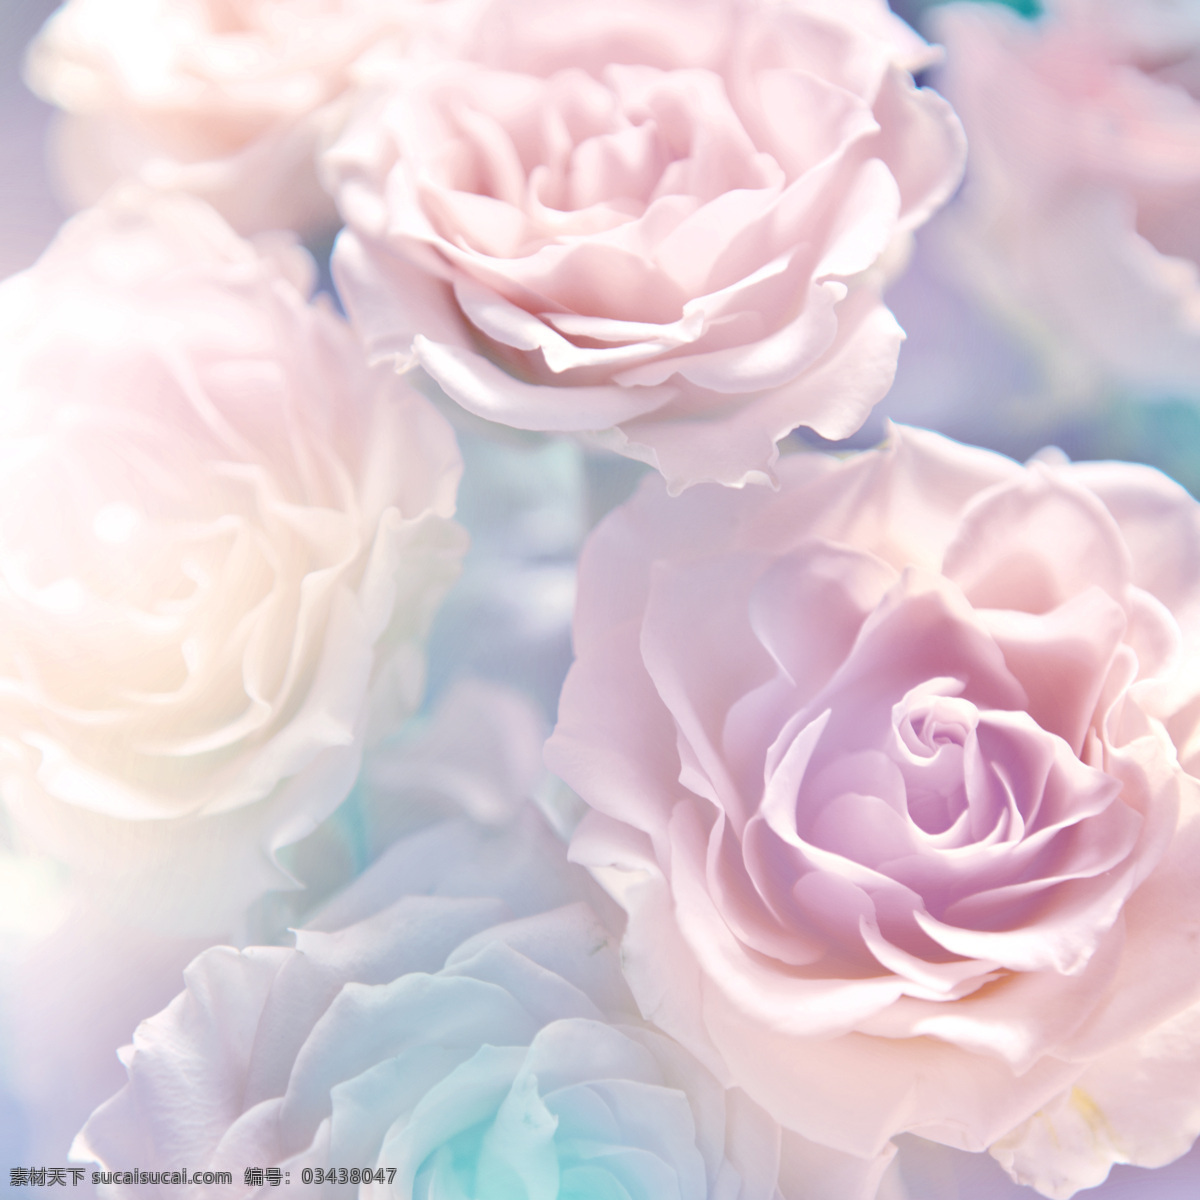 粉色 花朵 浪漫 背景 自然 玫瑰 月季 清新 可爱 生物世界 花草